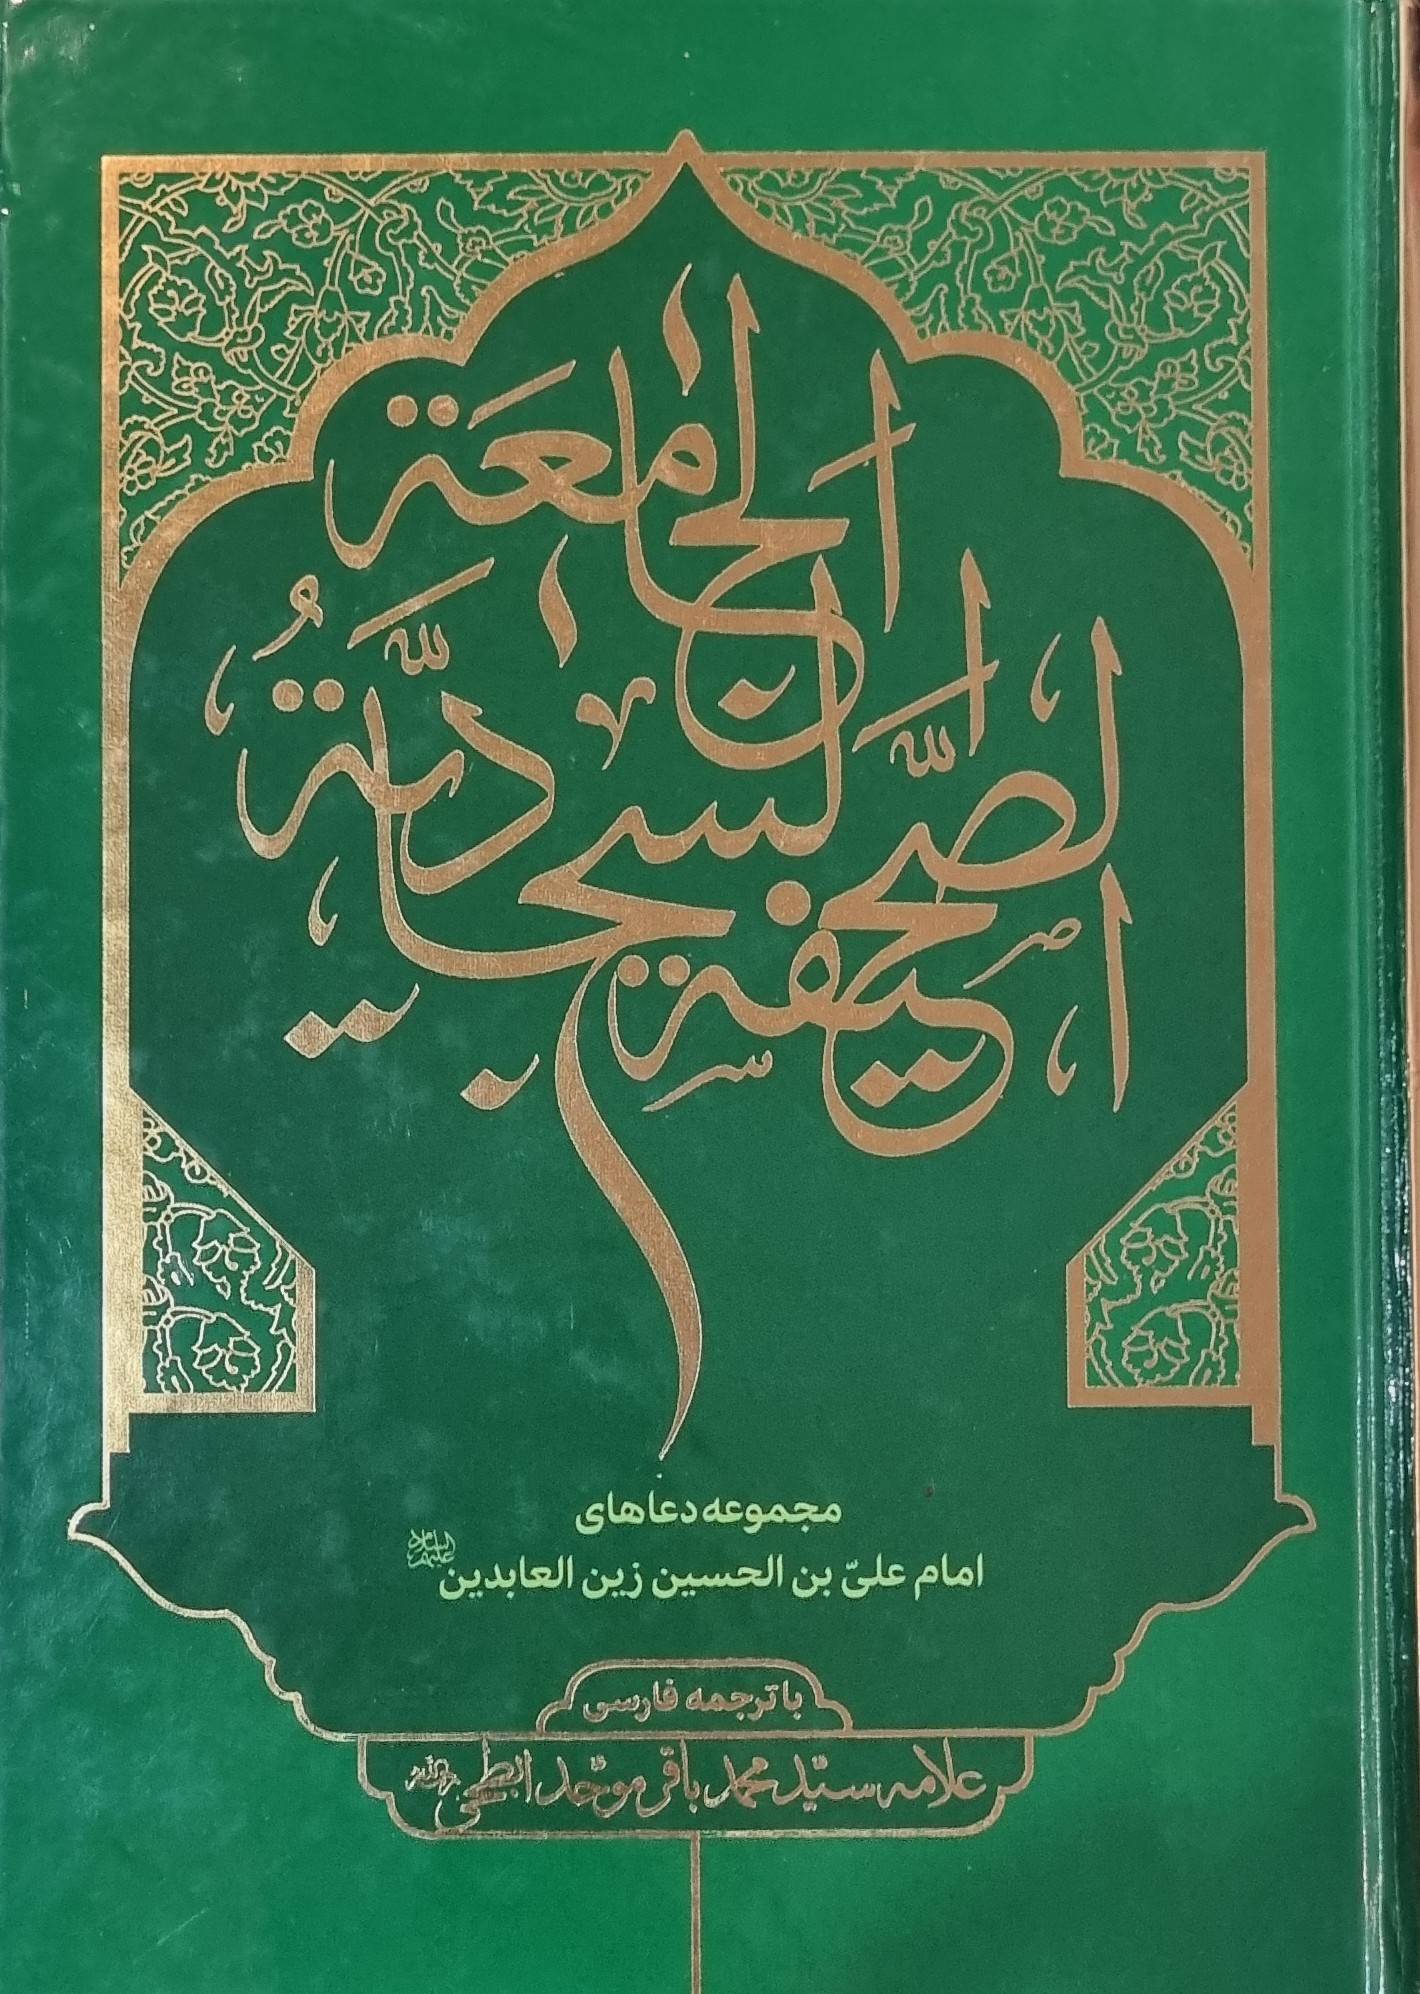 الصحیفه السجادیه: الجامعه الادعیه الامام علی بن الحسین (ع)